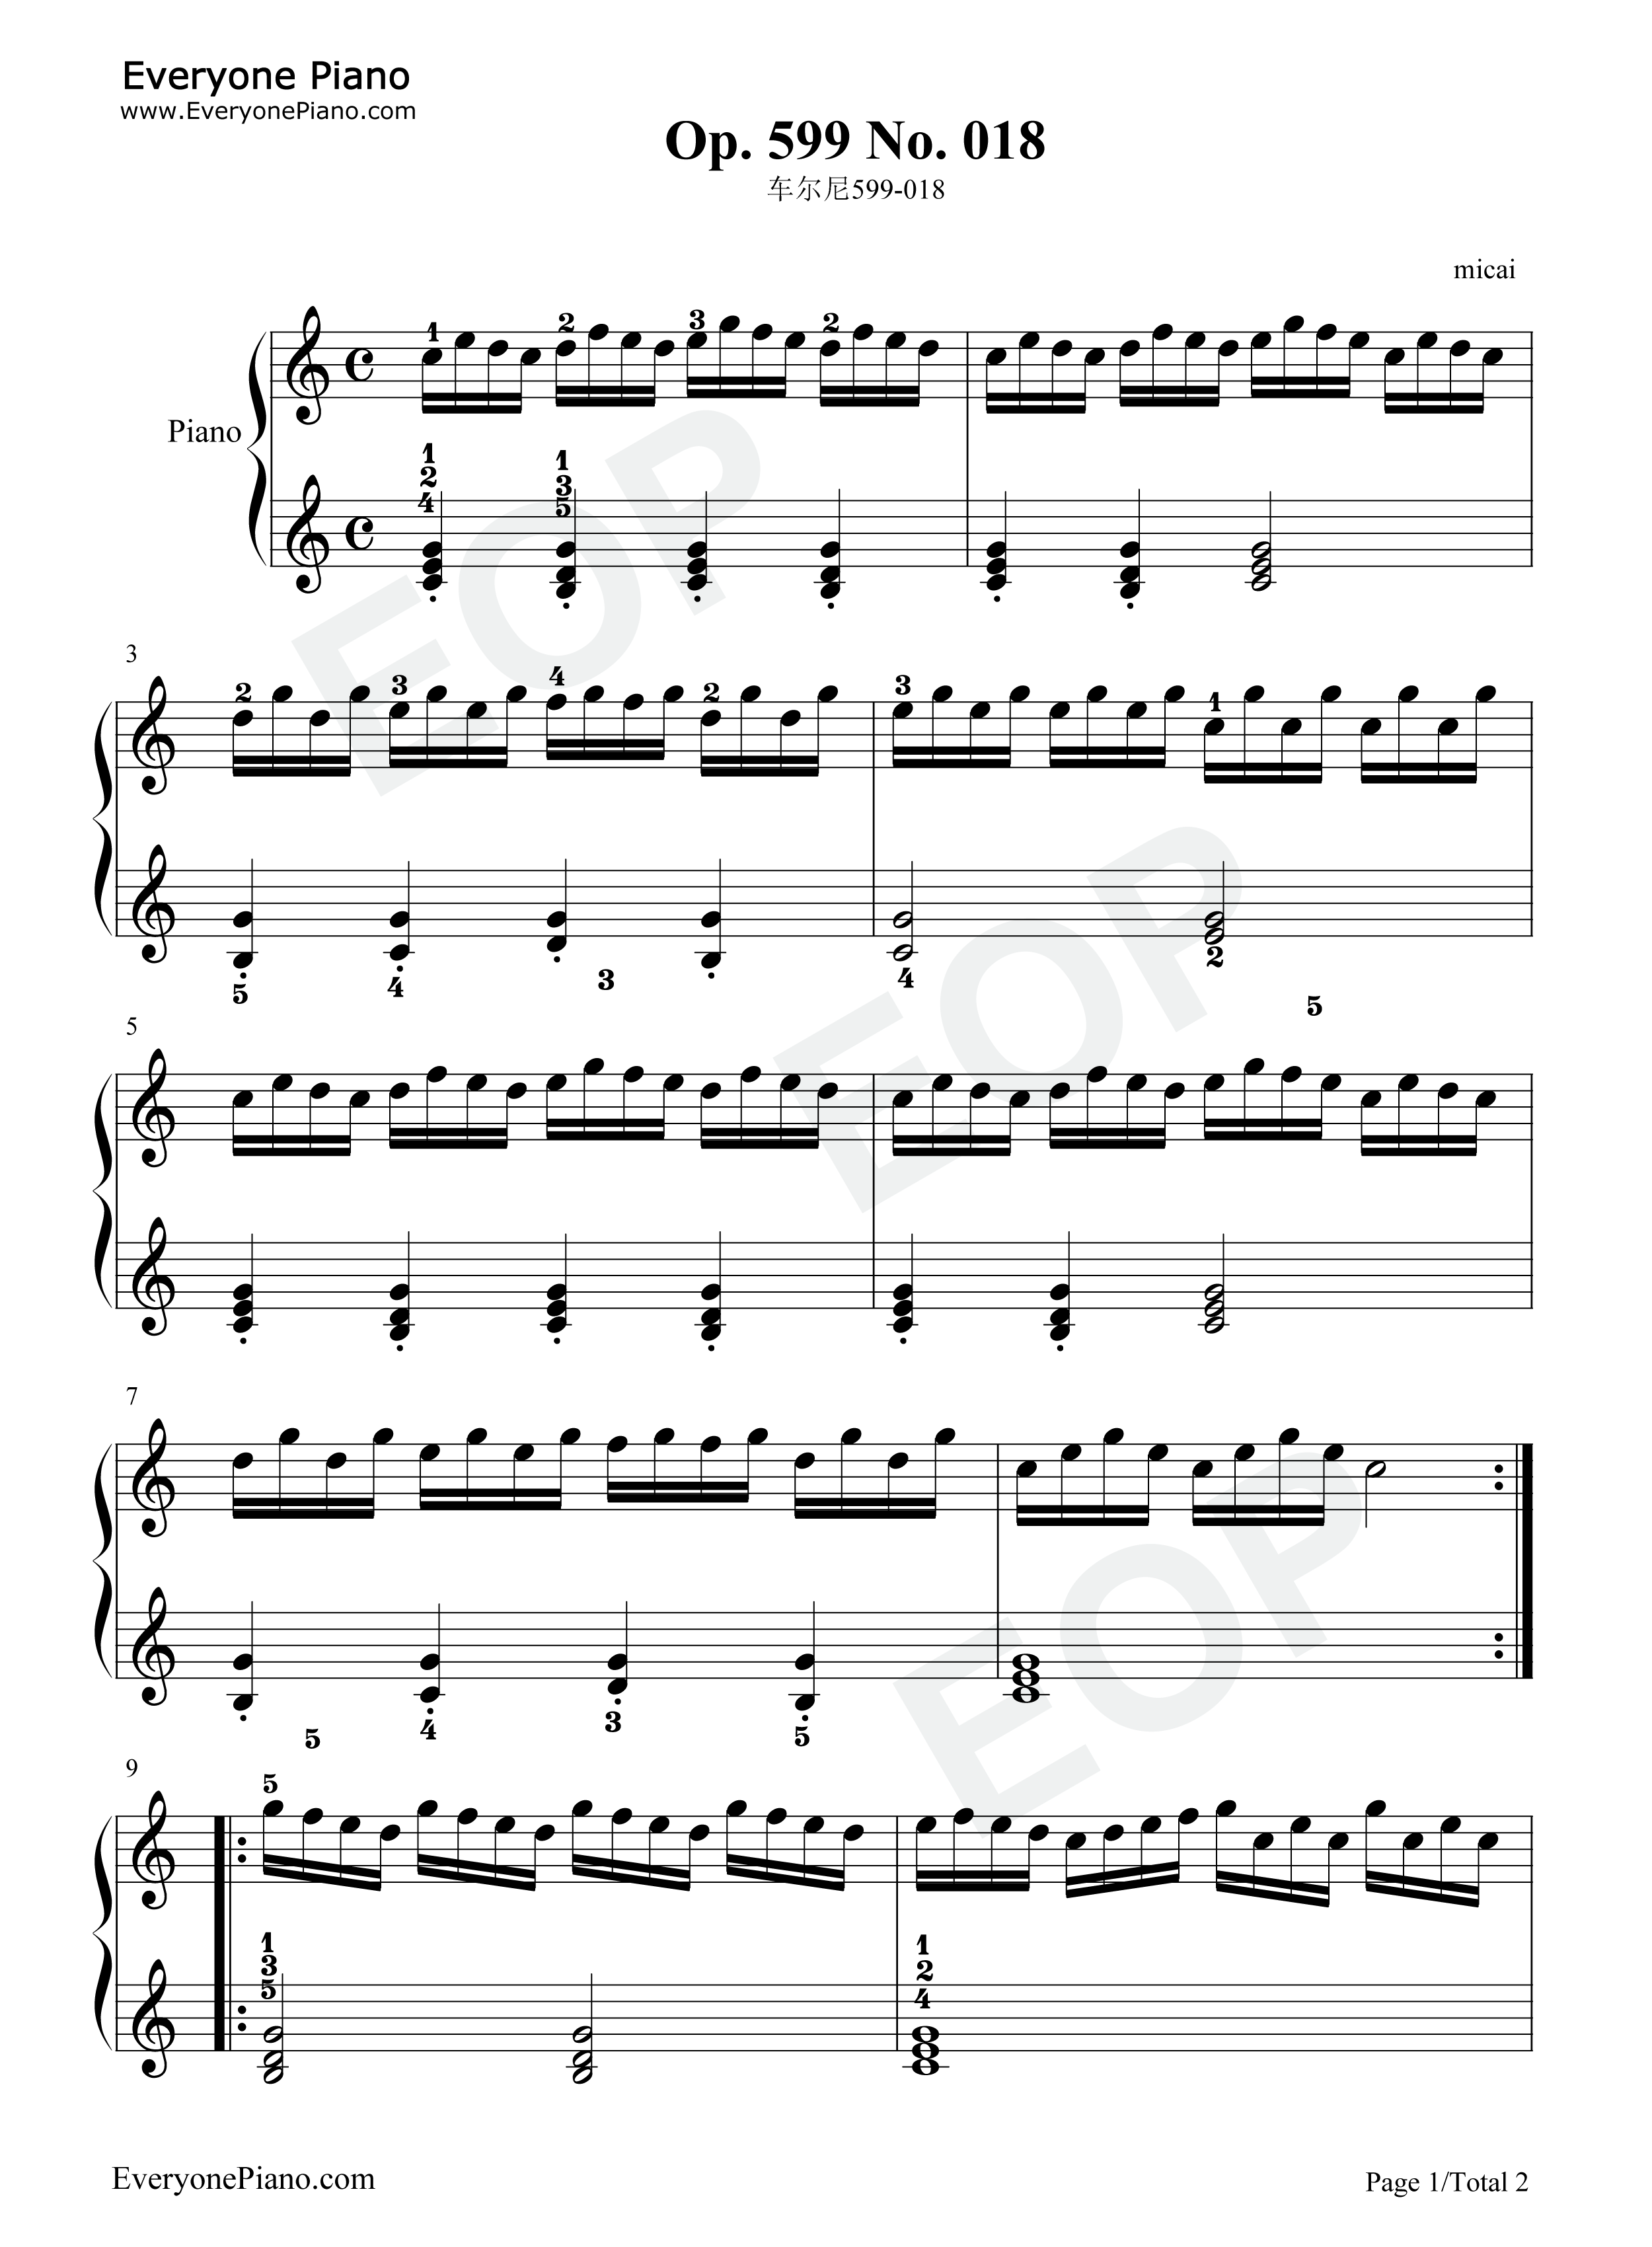 车尔尼599第21条钢琴谱图片